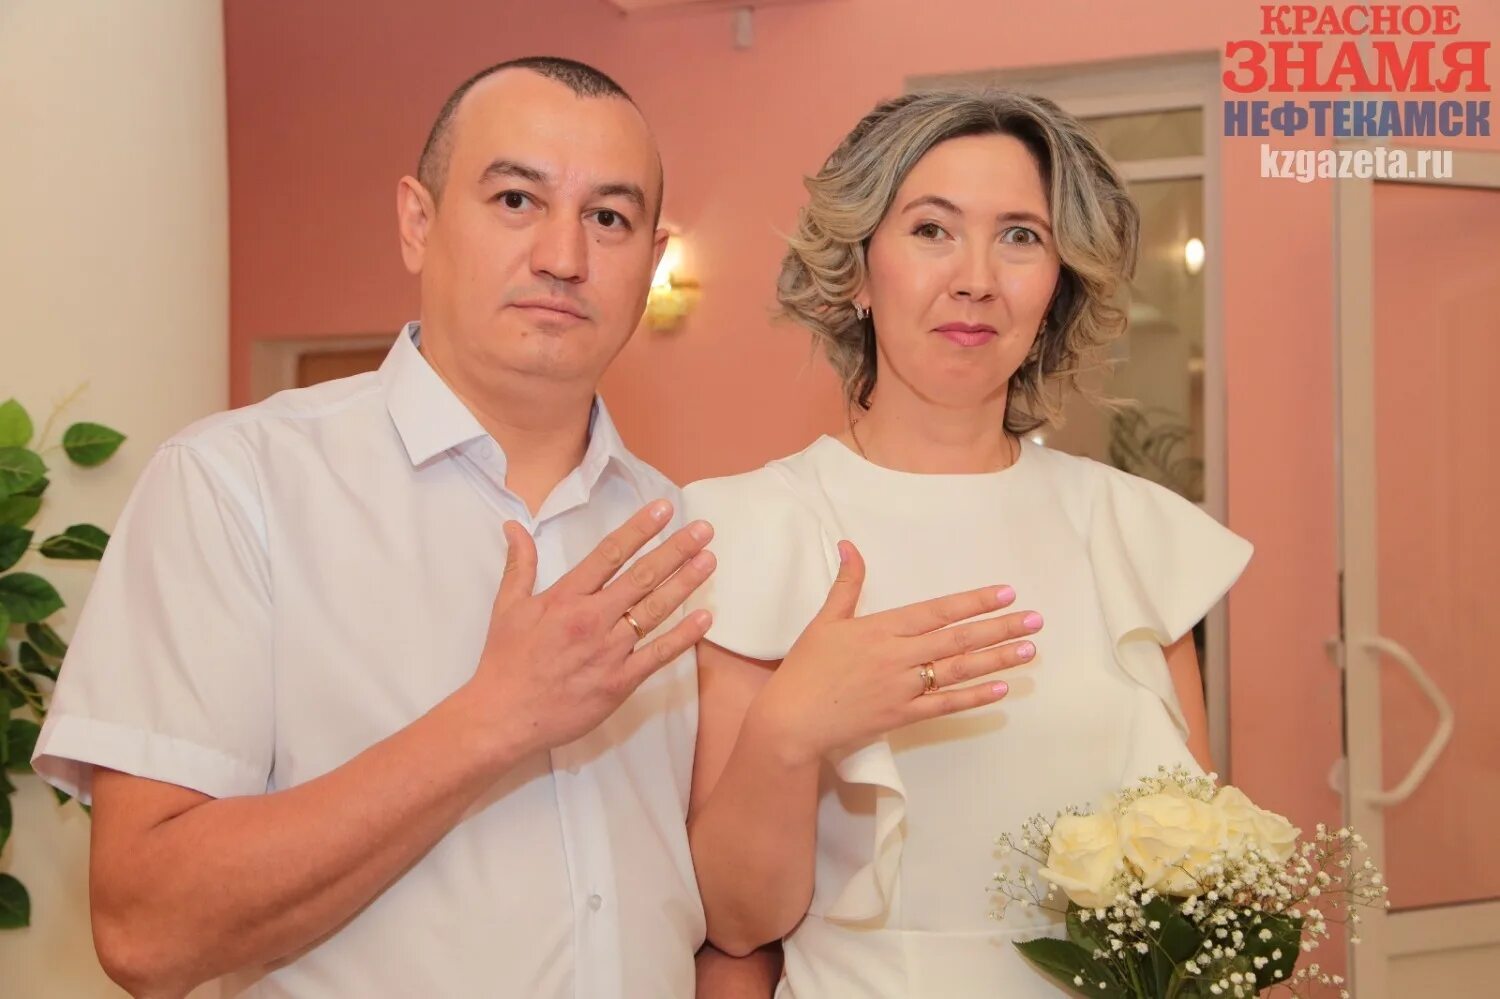 Свадьба 23.06.2023. Свадьба Склядневых 23.06.2023. Фото заключивших брак 23 июня в Белгороде.